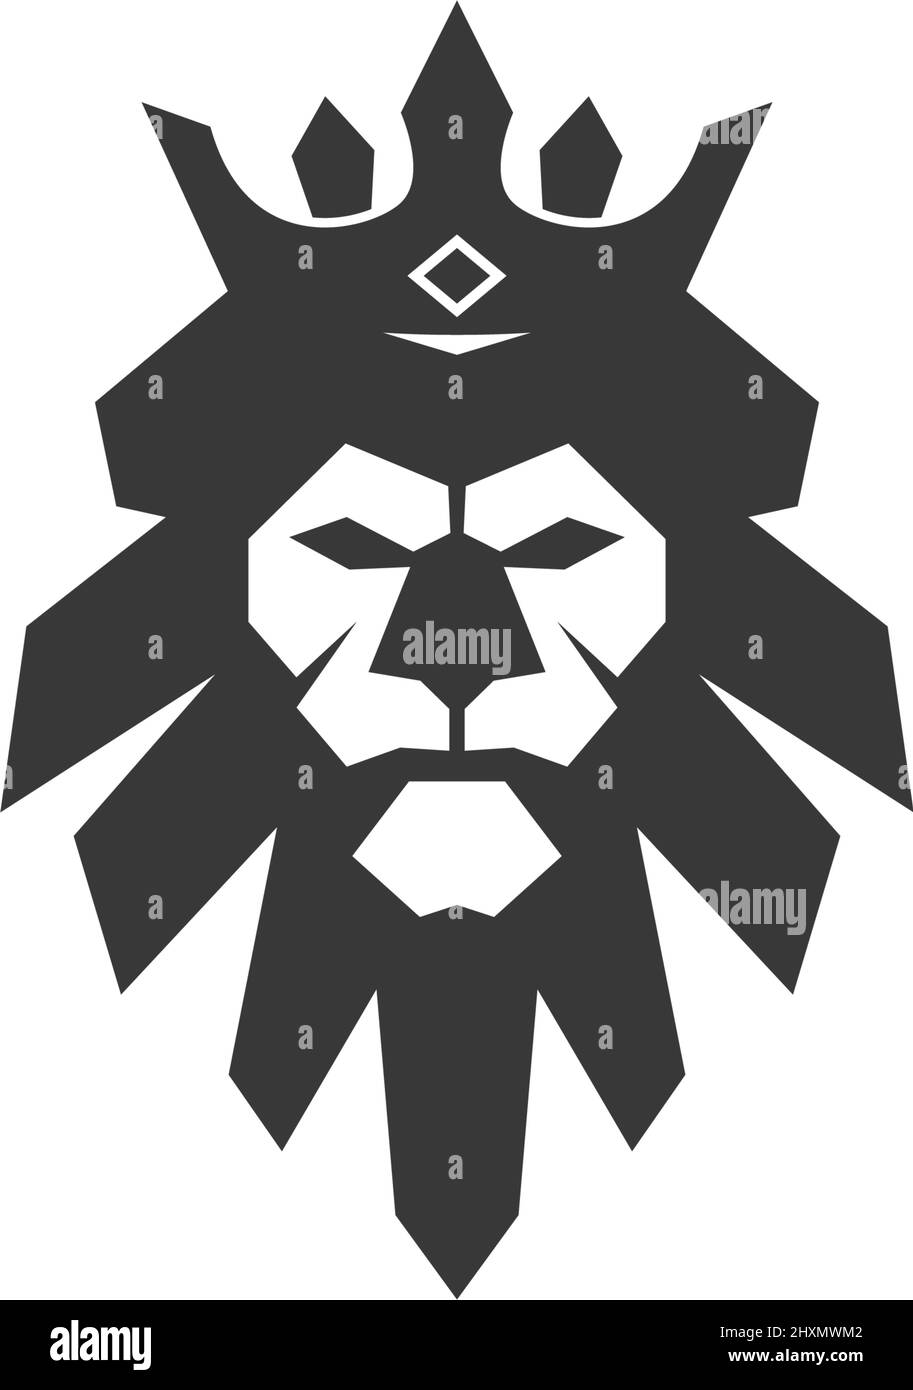 Ilustración de la plantilla vectorial del diseño del logotipo del icono de cabeza de león Ilustración del Vector